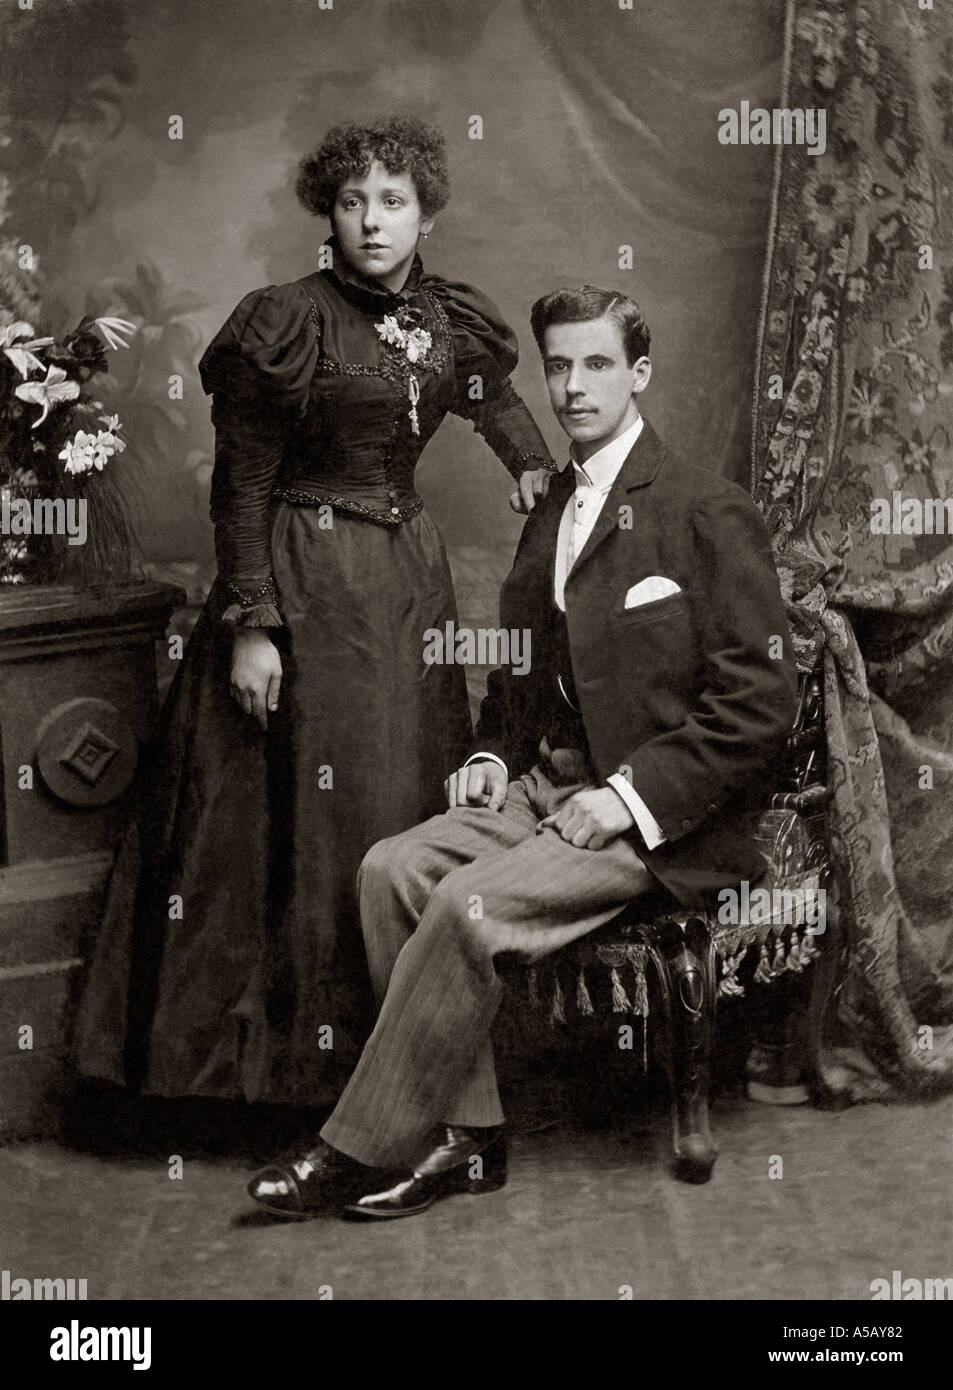 Photographie officielle d'un couple victorien dans les années 1890, Westminster Road, Londres, Royaume-Uni vers 1897 Banque D'Images